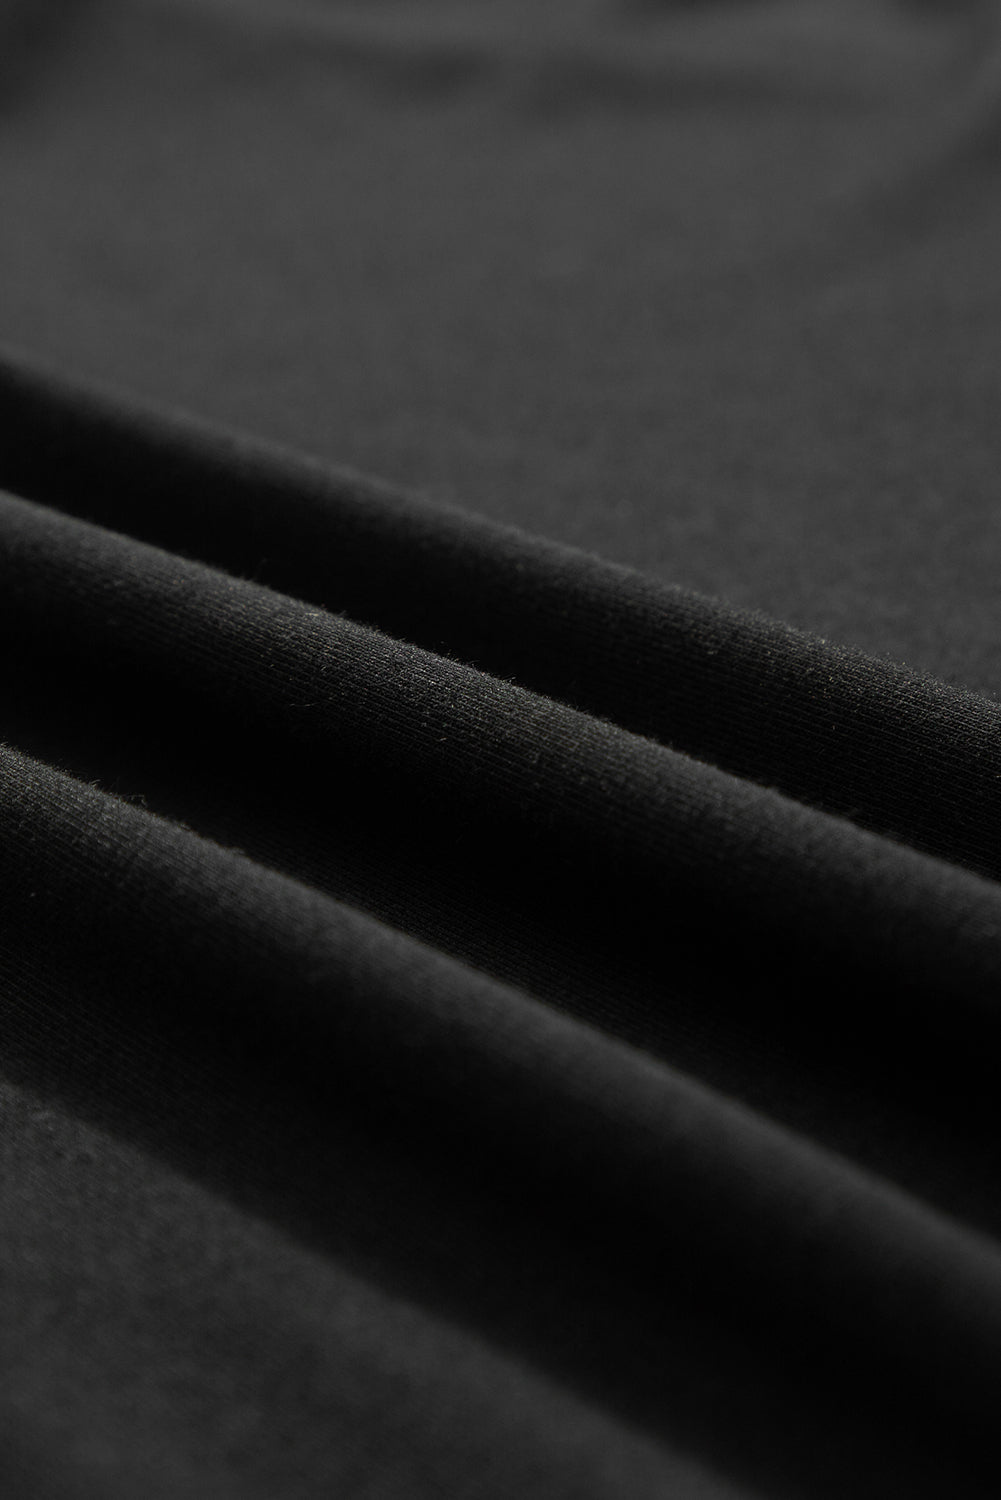 Črna velika majica s kvačkanimi čipkastimi detajli